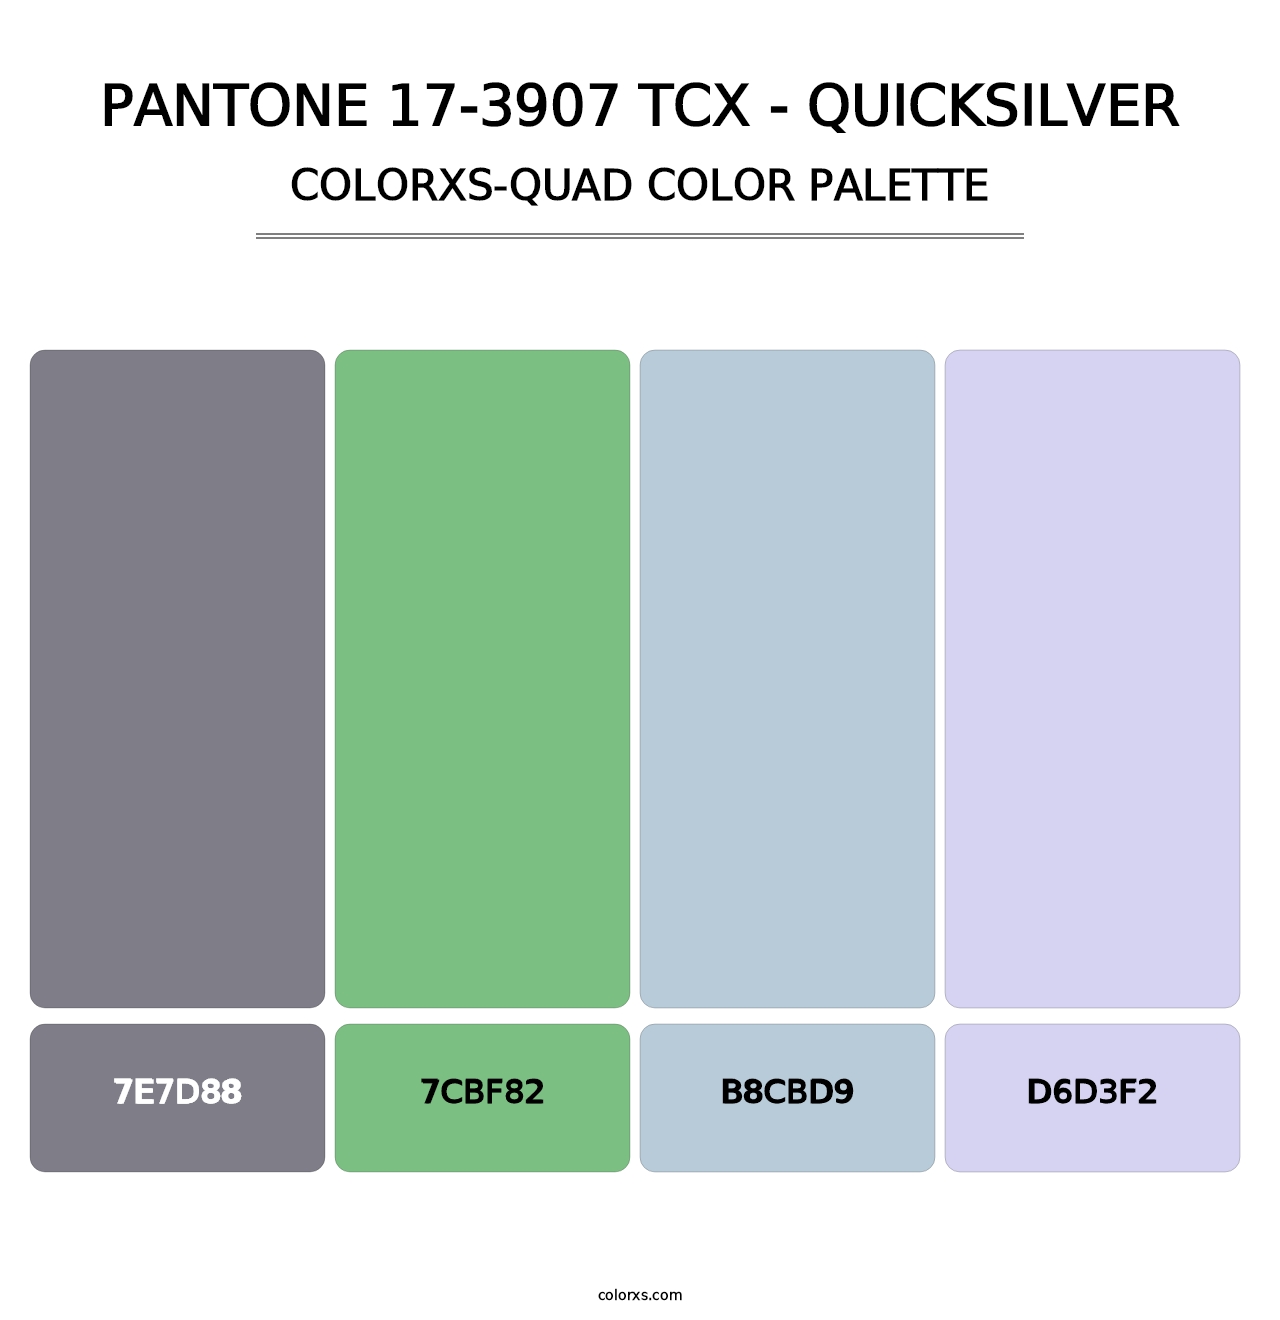 PANTONE 17-3907 TCX - Quicksilver - Colorxs Quad Palette